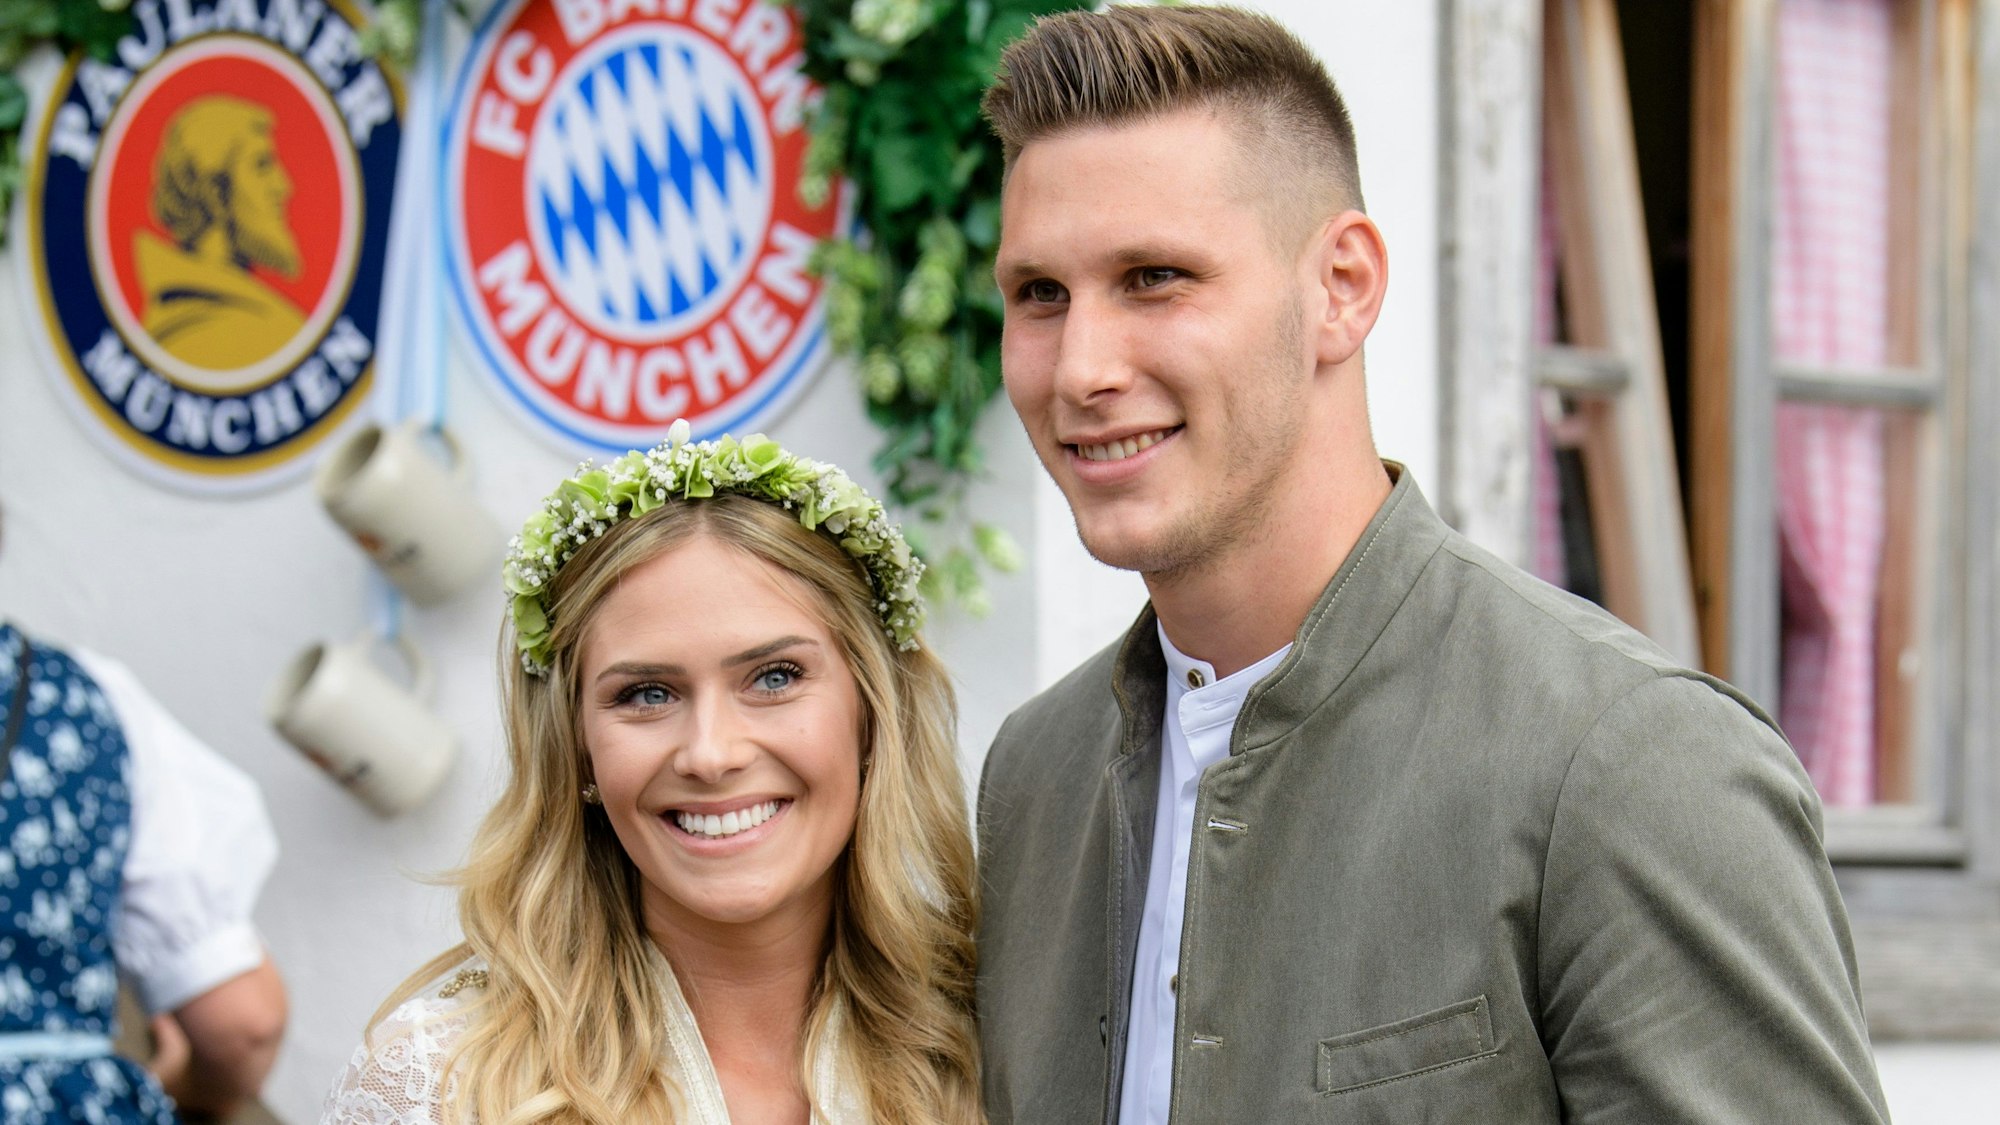 Niklas Süle vom FC Bayern München und seine Freundin Melissa Halter kommen in das Käferzelt auf dem Oktoberfest.